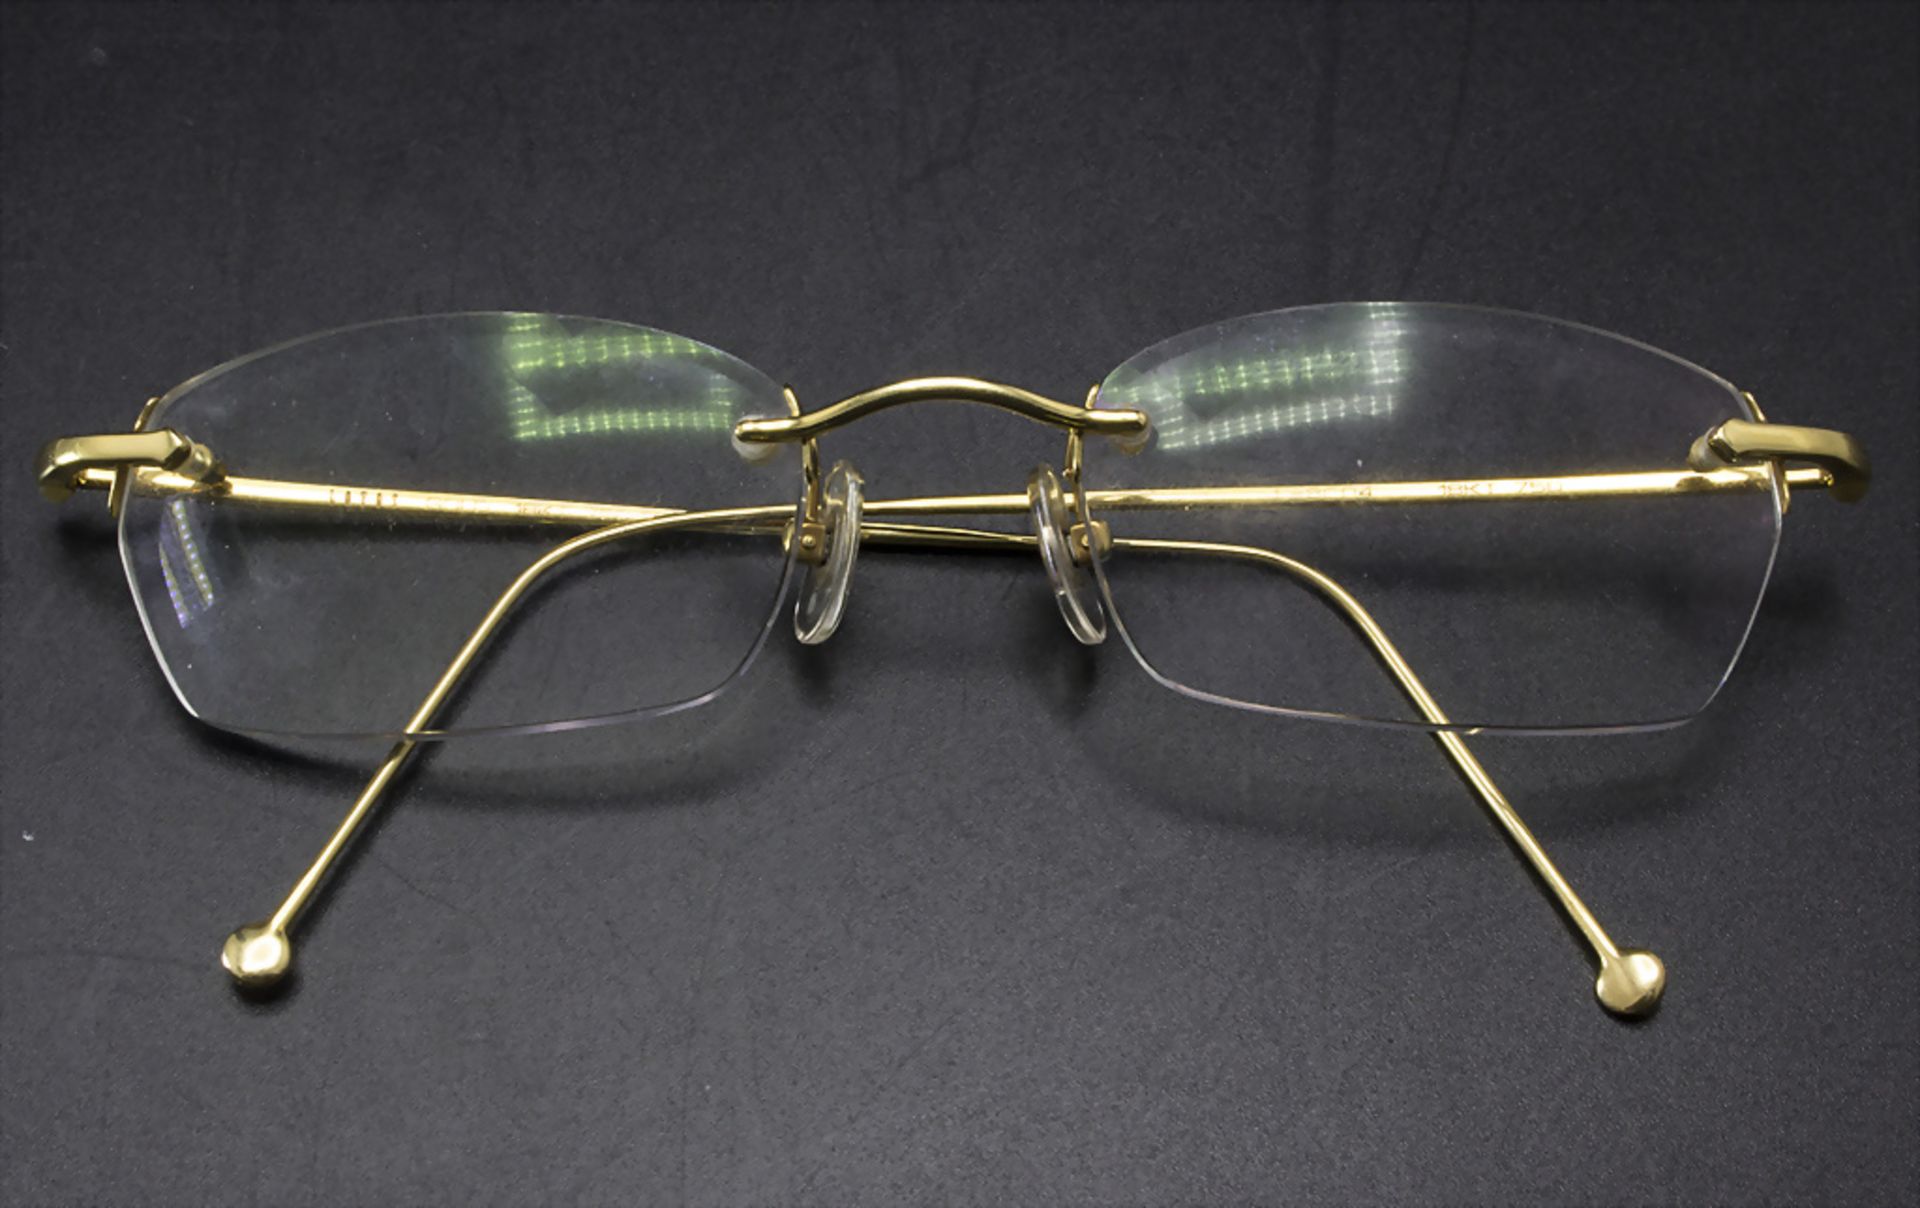 Brille 'Lotos' / Glasses 'Lotos' in 18k gold, deutsch, 20. Jh.